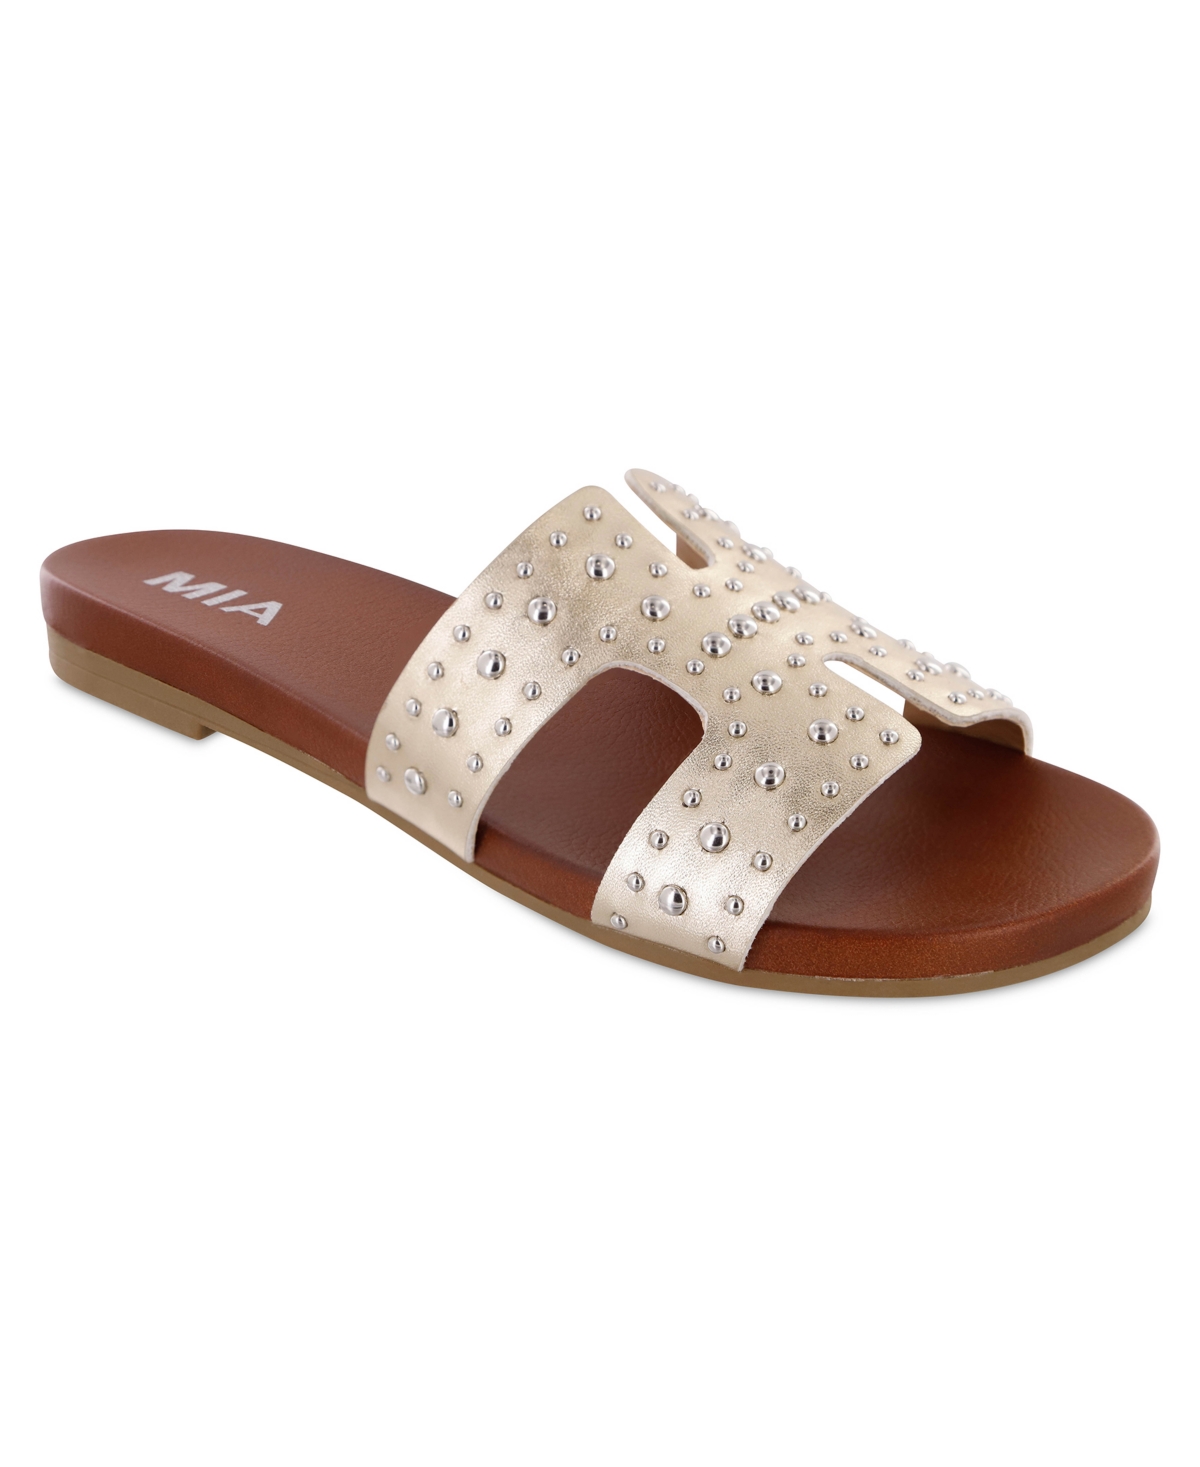 Women's Holston-d Flat Sandals - Soft Gold